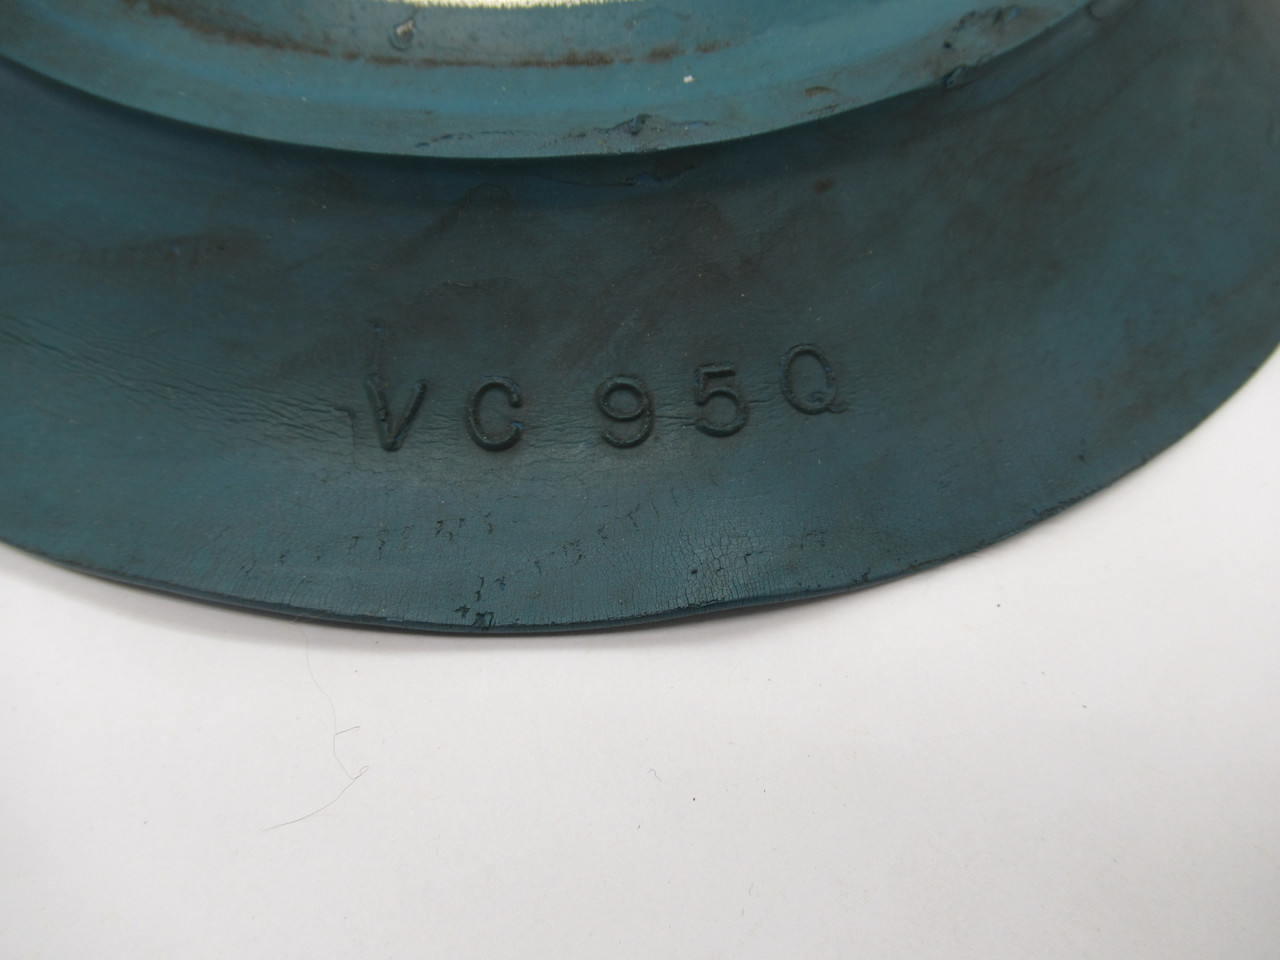 Anver VC95Q Large Vacuum Cap USED